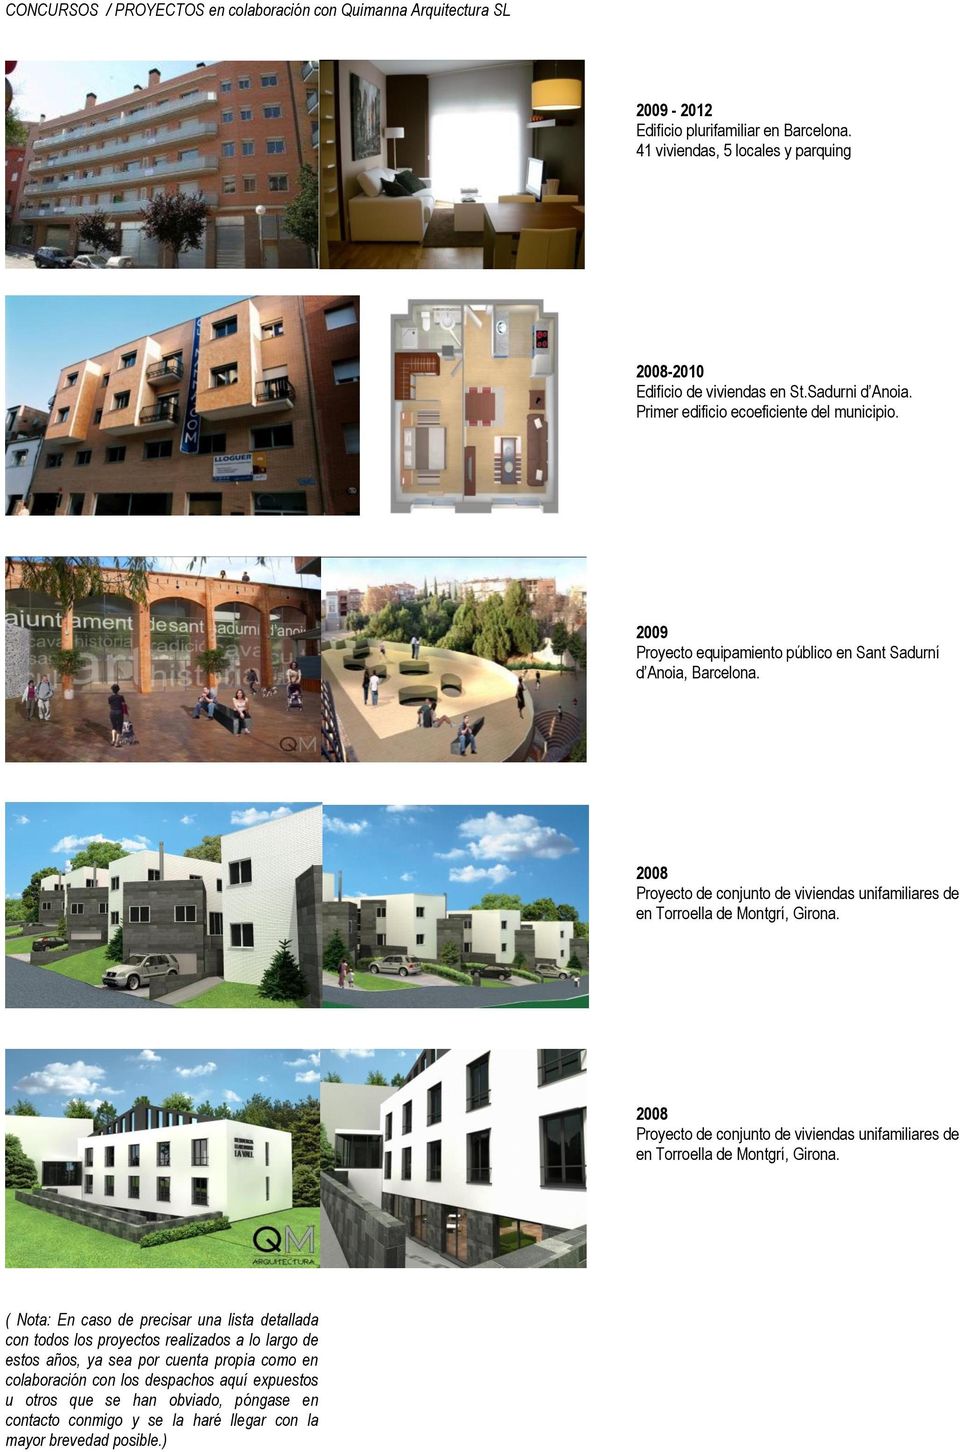 Proyecto de conjunto de viviendas unifamiliares de alto standing en Torroella de Montgrí, Girona. Proyecto de conjunto de viviendas unifamiliares de alto standing en Torroella de Montgrí, Girona.